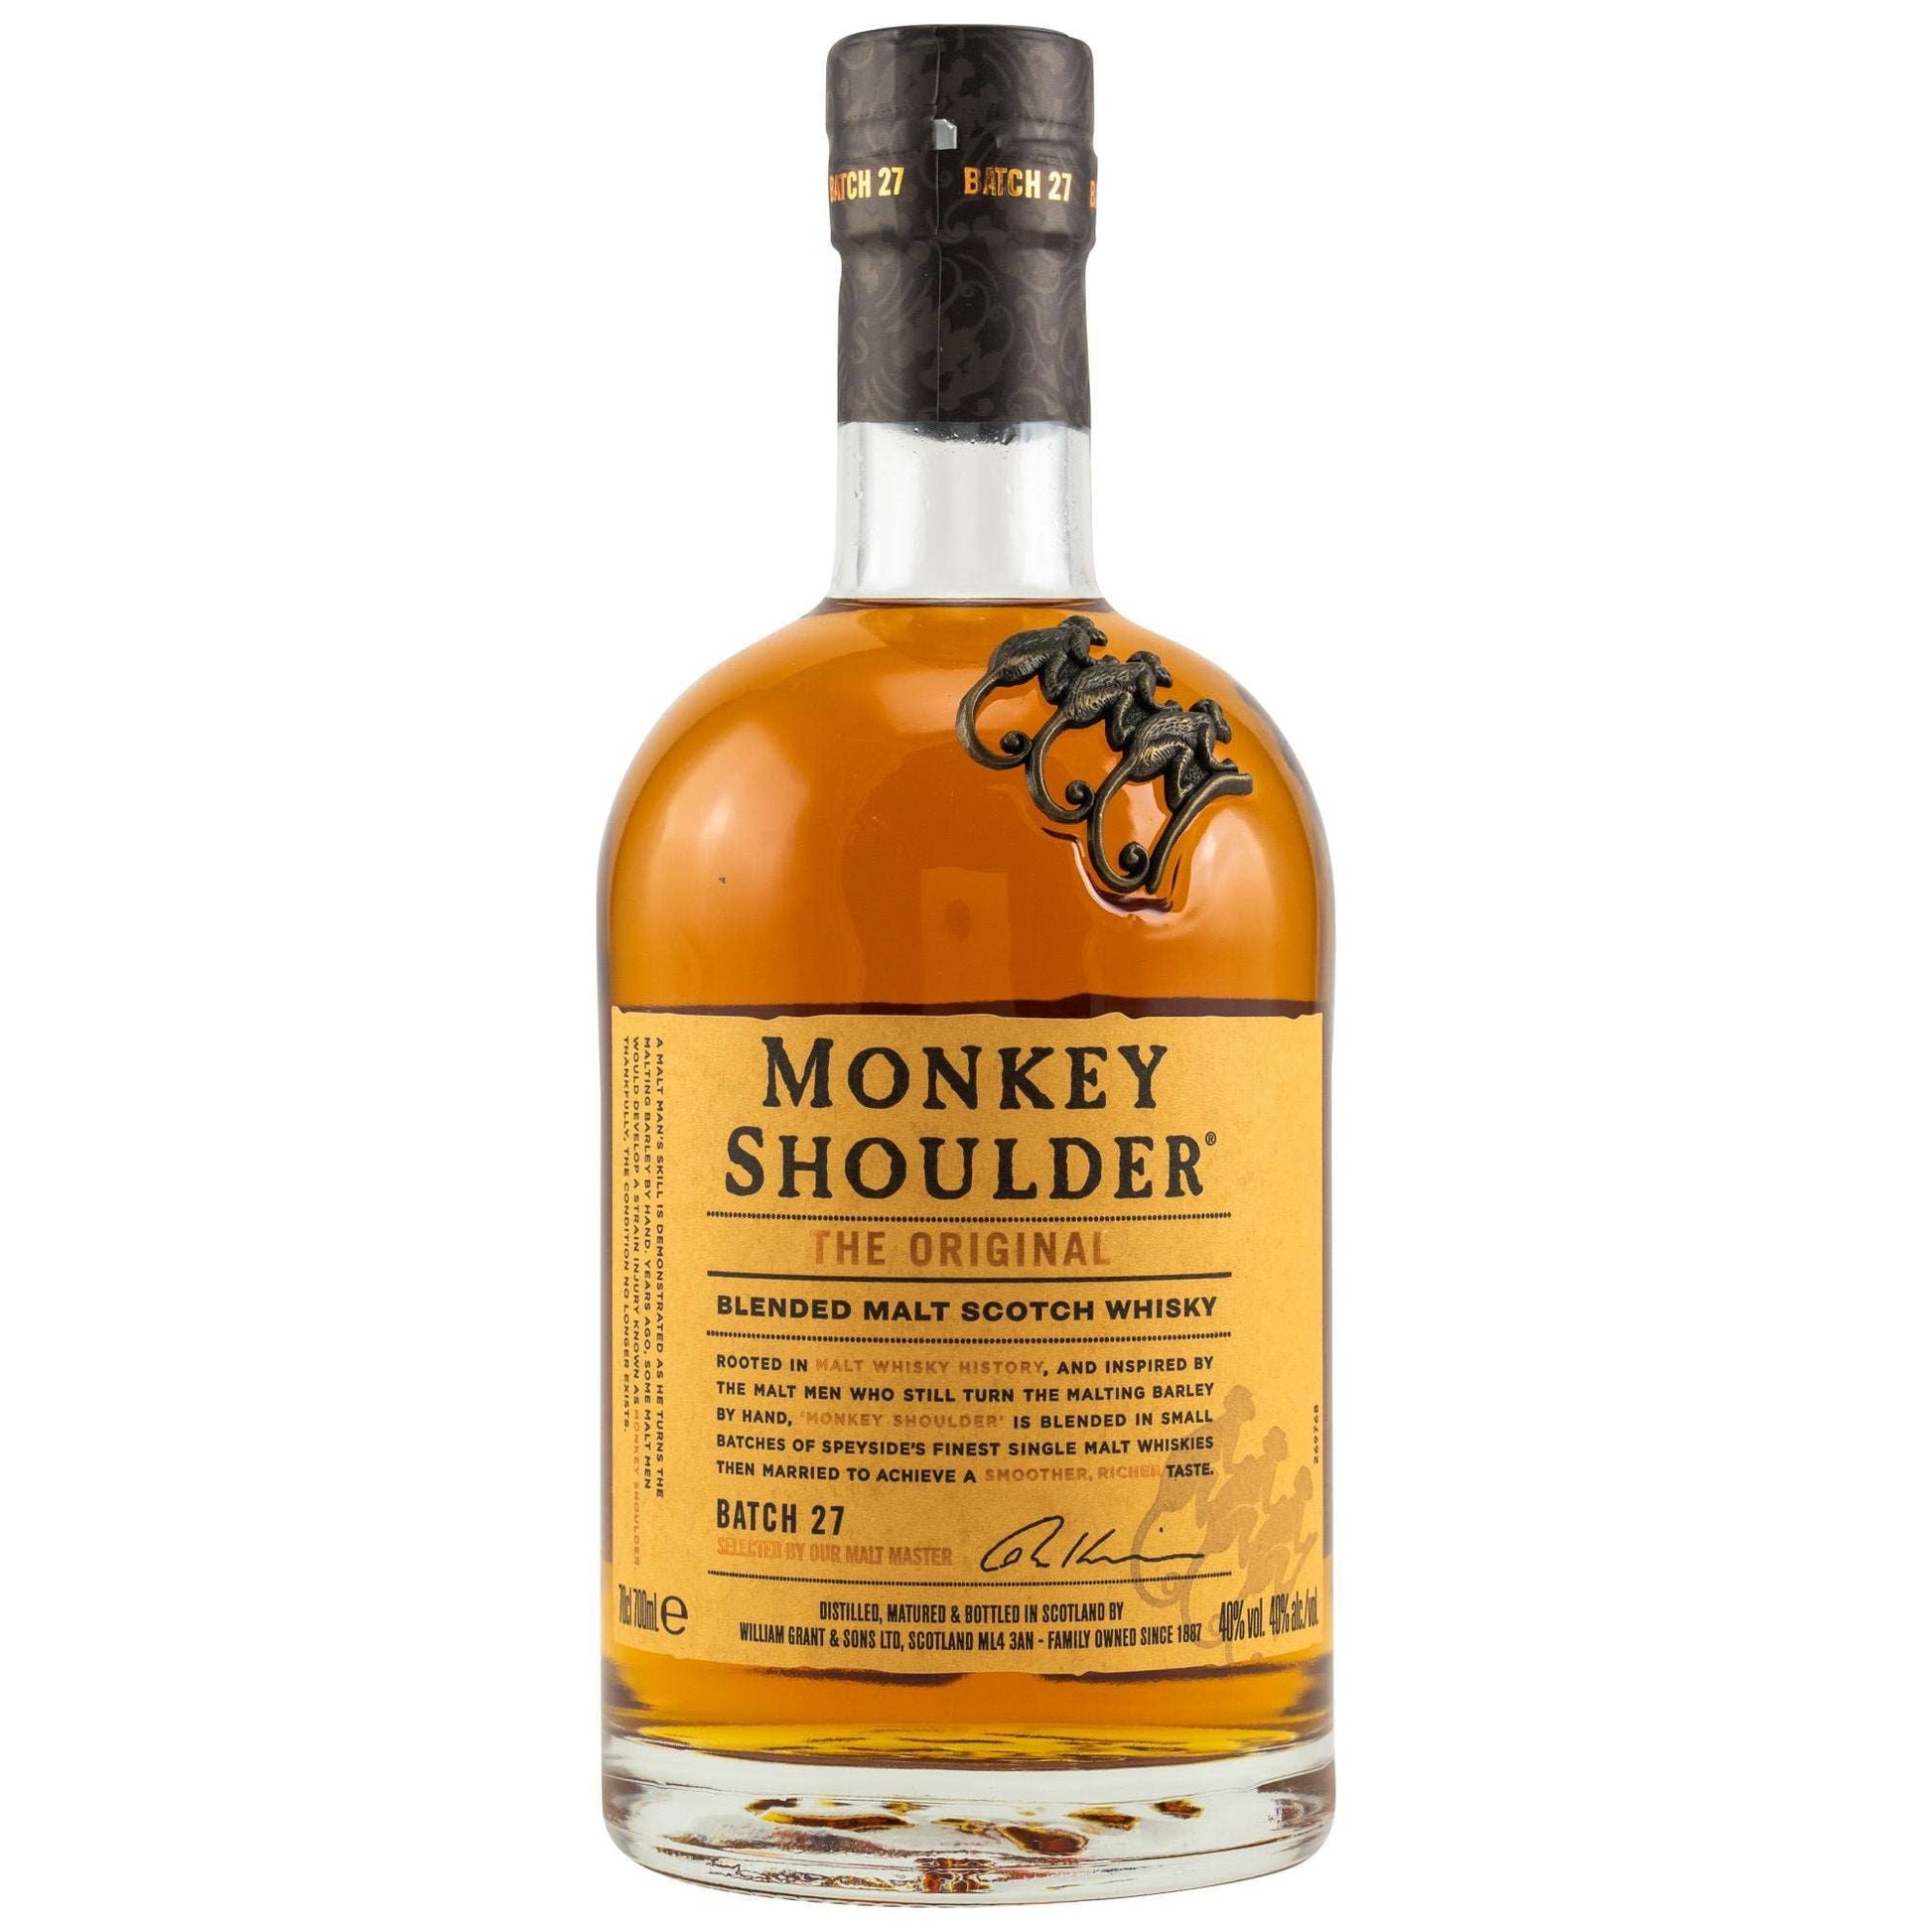 Monkey Shoulder - Online The BOTTLE kaufen GET Original A | getabottle.de –